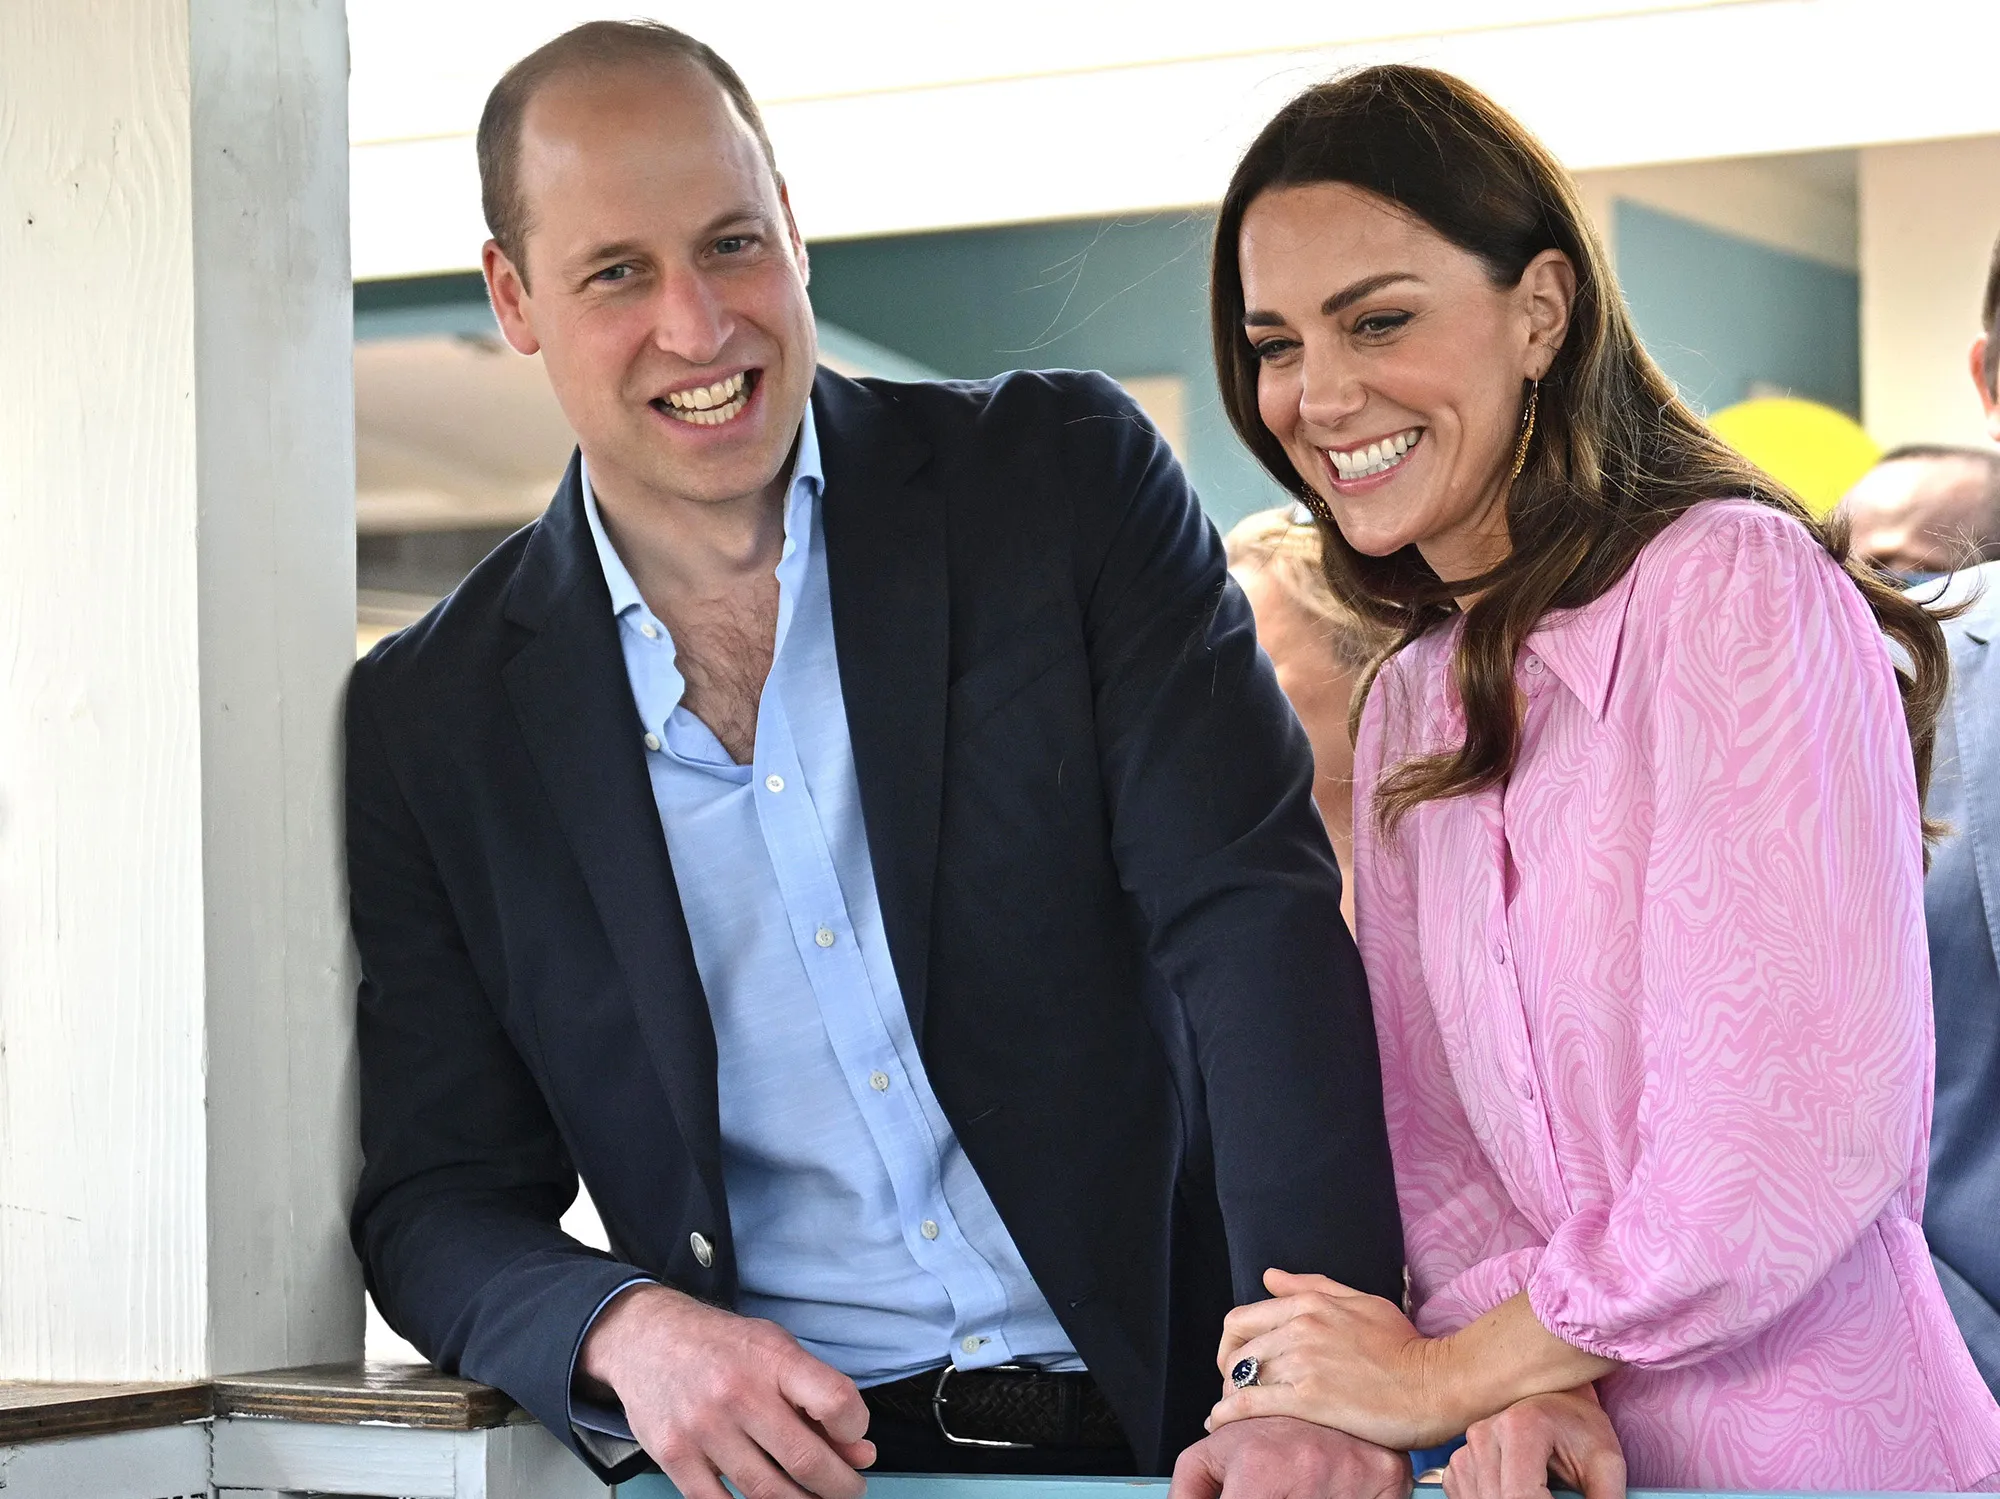 Notizia attesissima: William e Kate, pronti a farlo succedere ancora - La novità dalla Royal Family